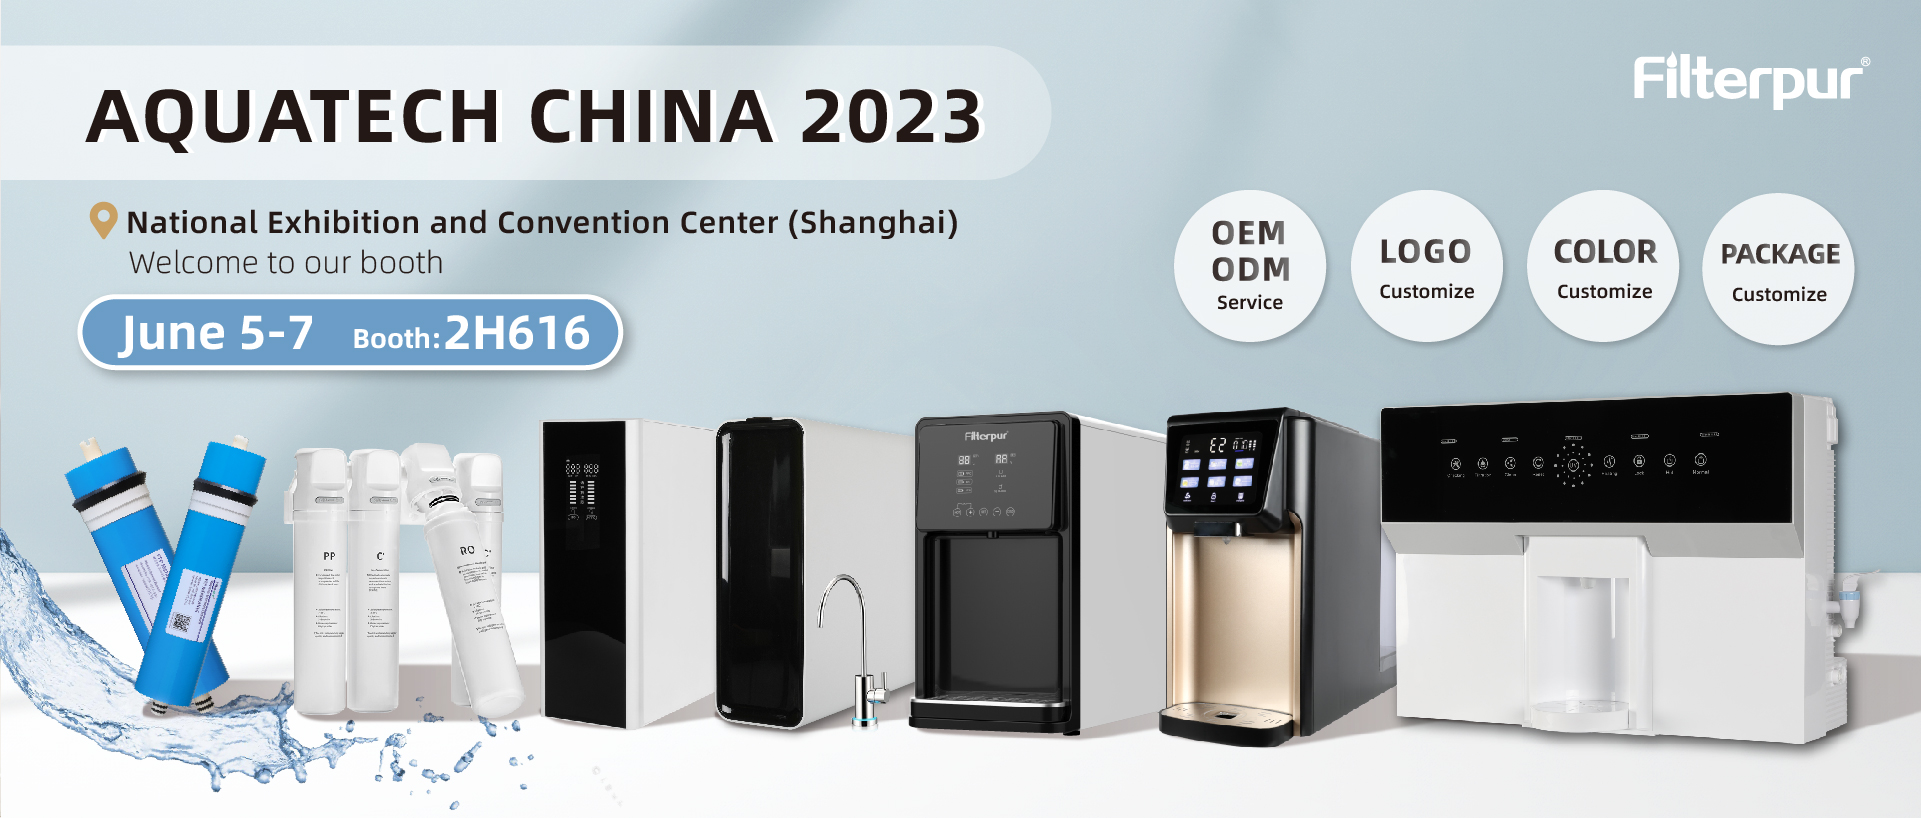 Добро пожаловать на наш стенд на выставке Aquatech China 2023.